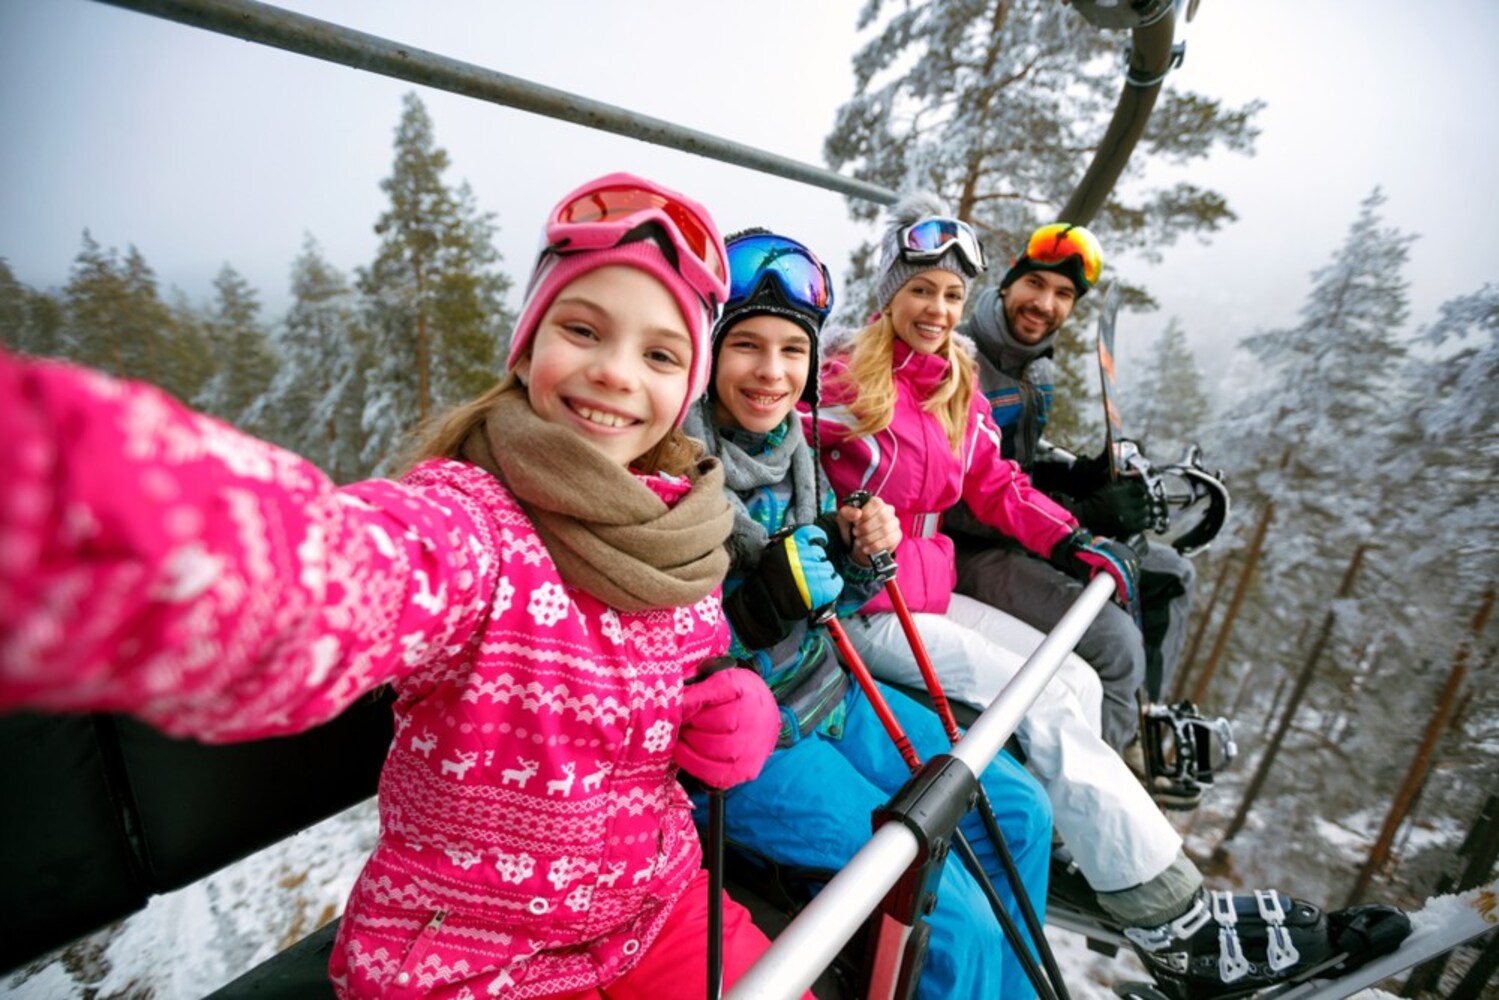 スノボ スキー用インナー セカンドレイヤーおすすめ人気20選 防寒性 速乾性が重要ポイント Best One ベストワン